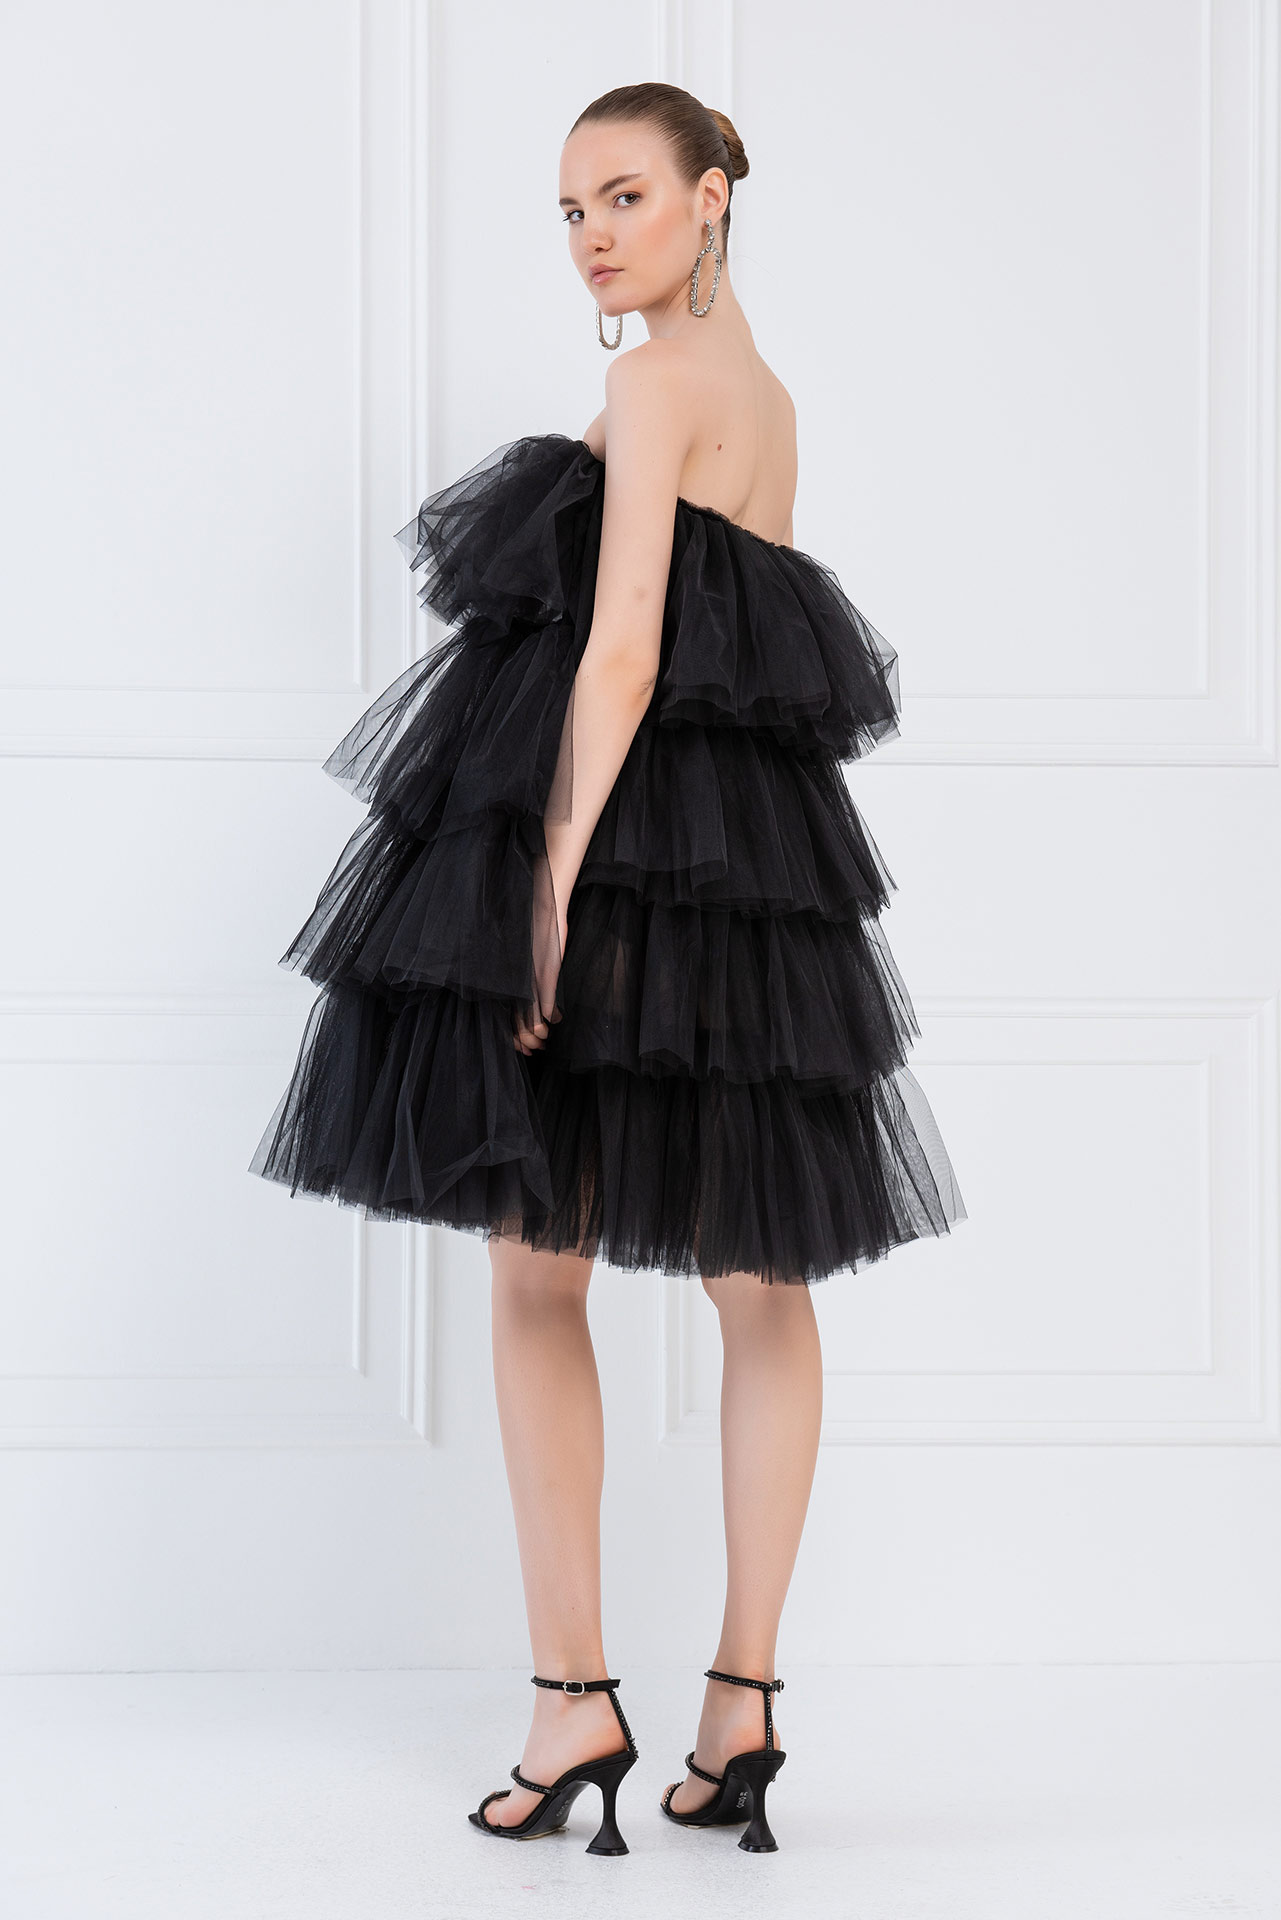 Wholesale Off The Shoulder Black Tulle Dress